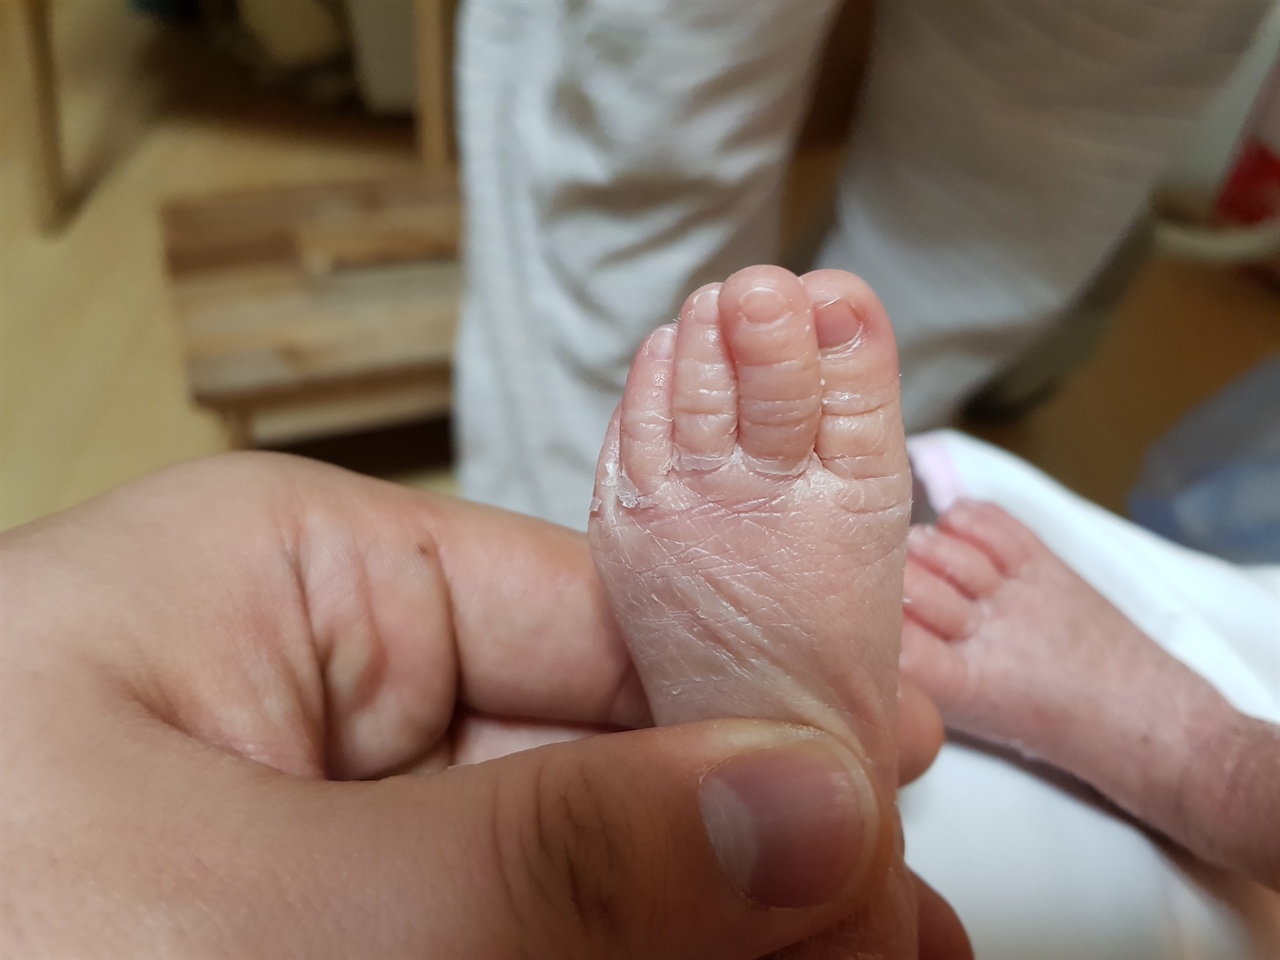   아들의 조그마한 발(발가락까지 아빠와 닮았어요)